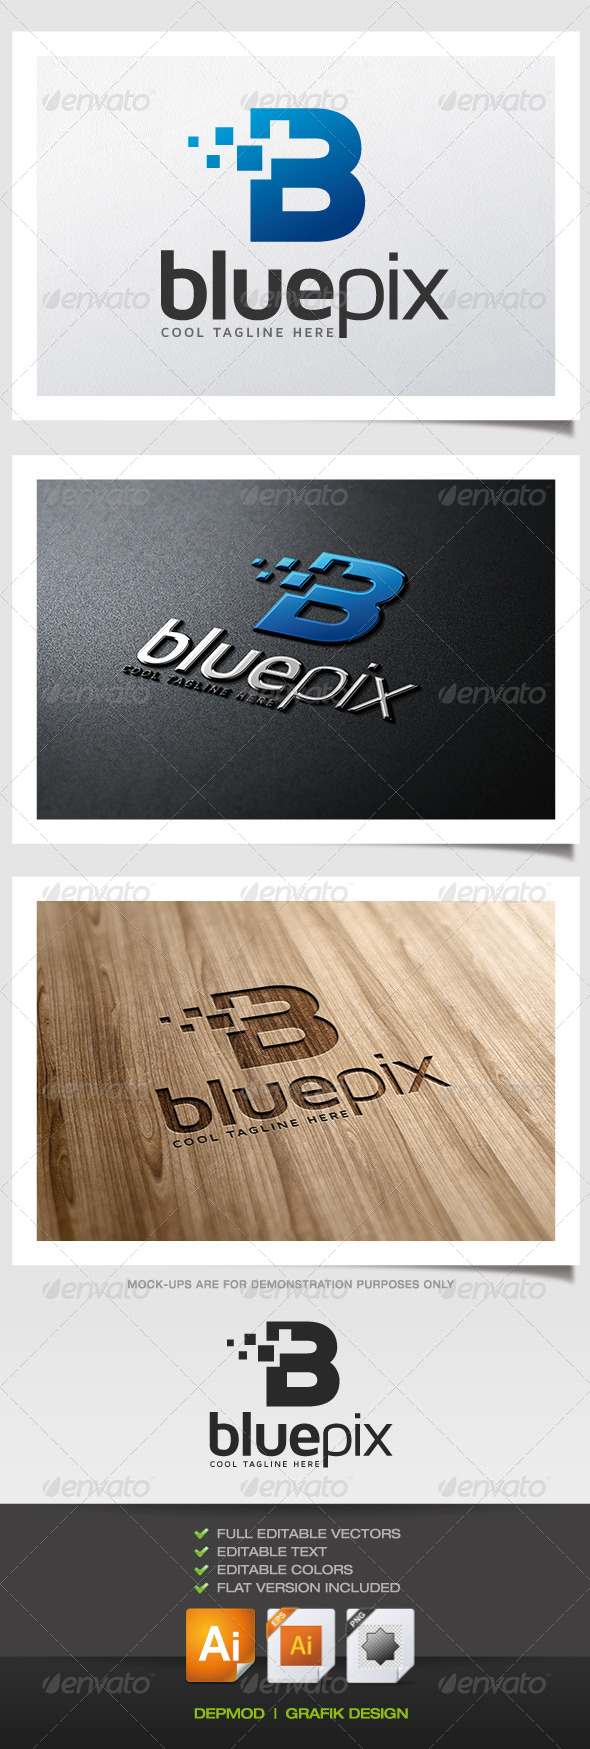 Blue Pix Logo